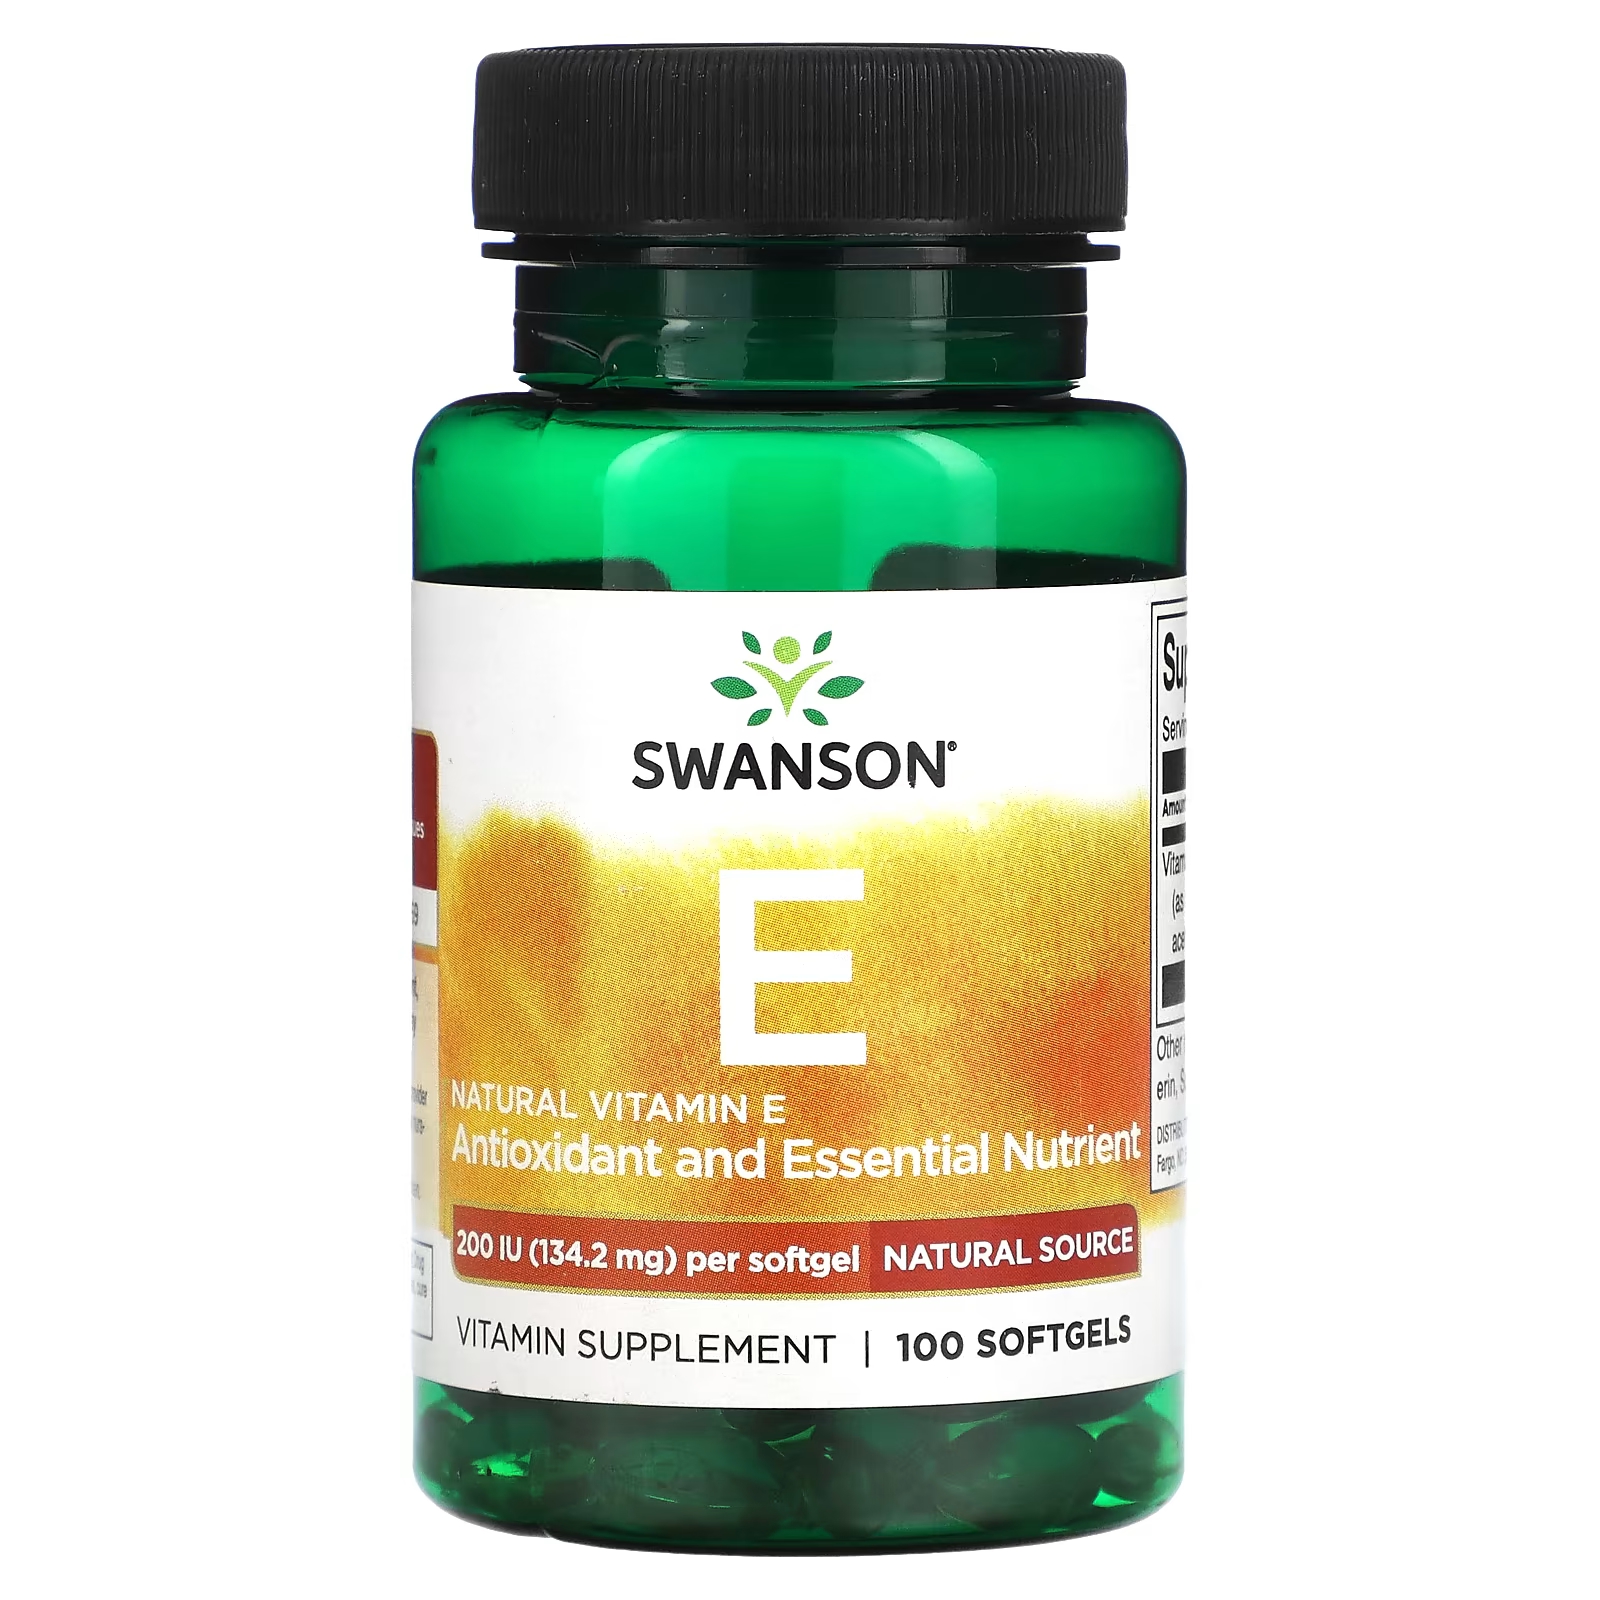 Витамин Е Swanson натуральный, 134.2 мг 100 таблеток витамин е swanson натуральный 1000 ме 100 таблеток